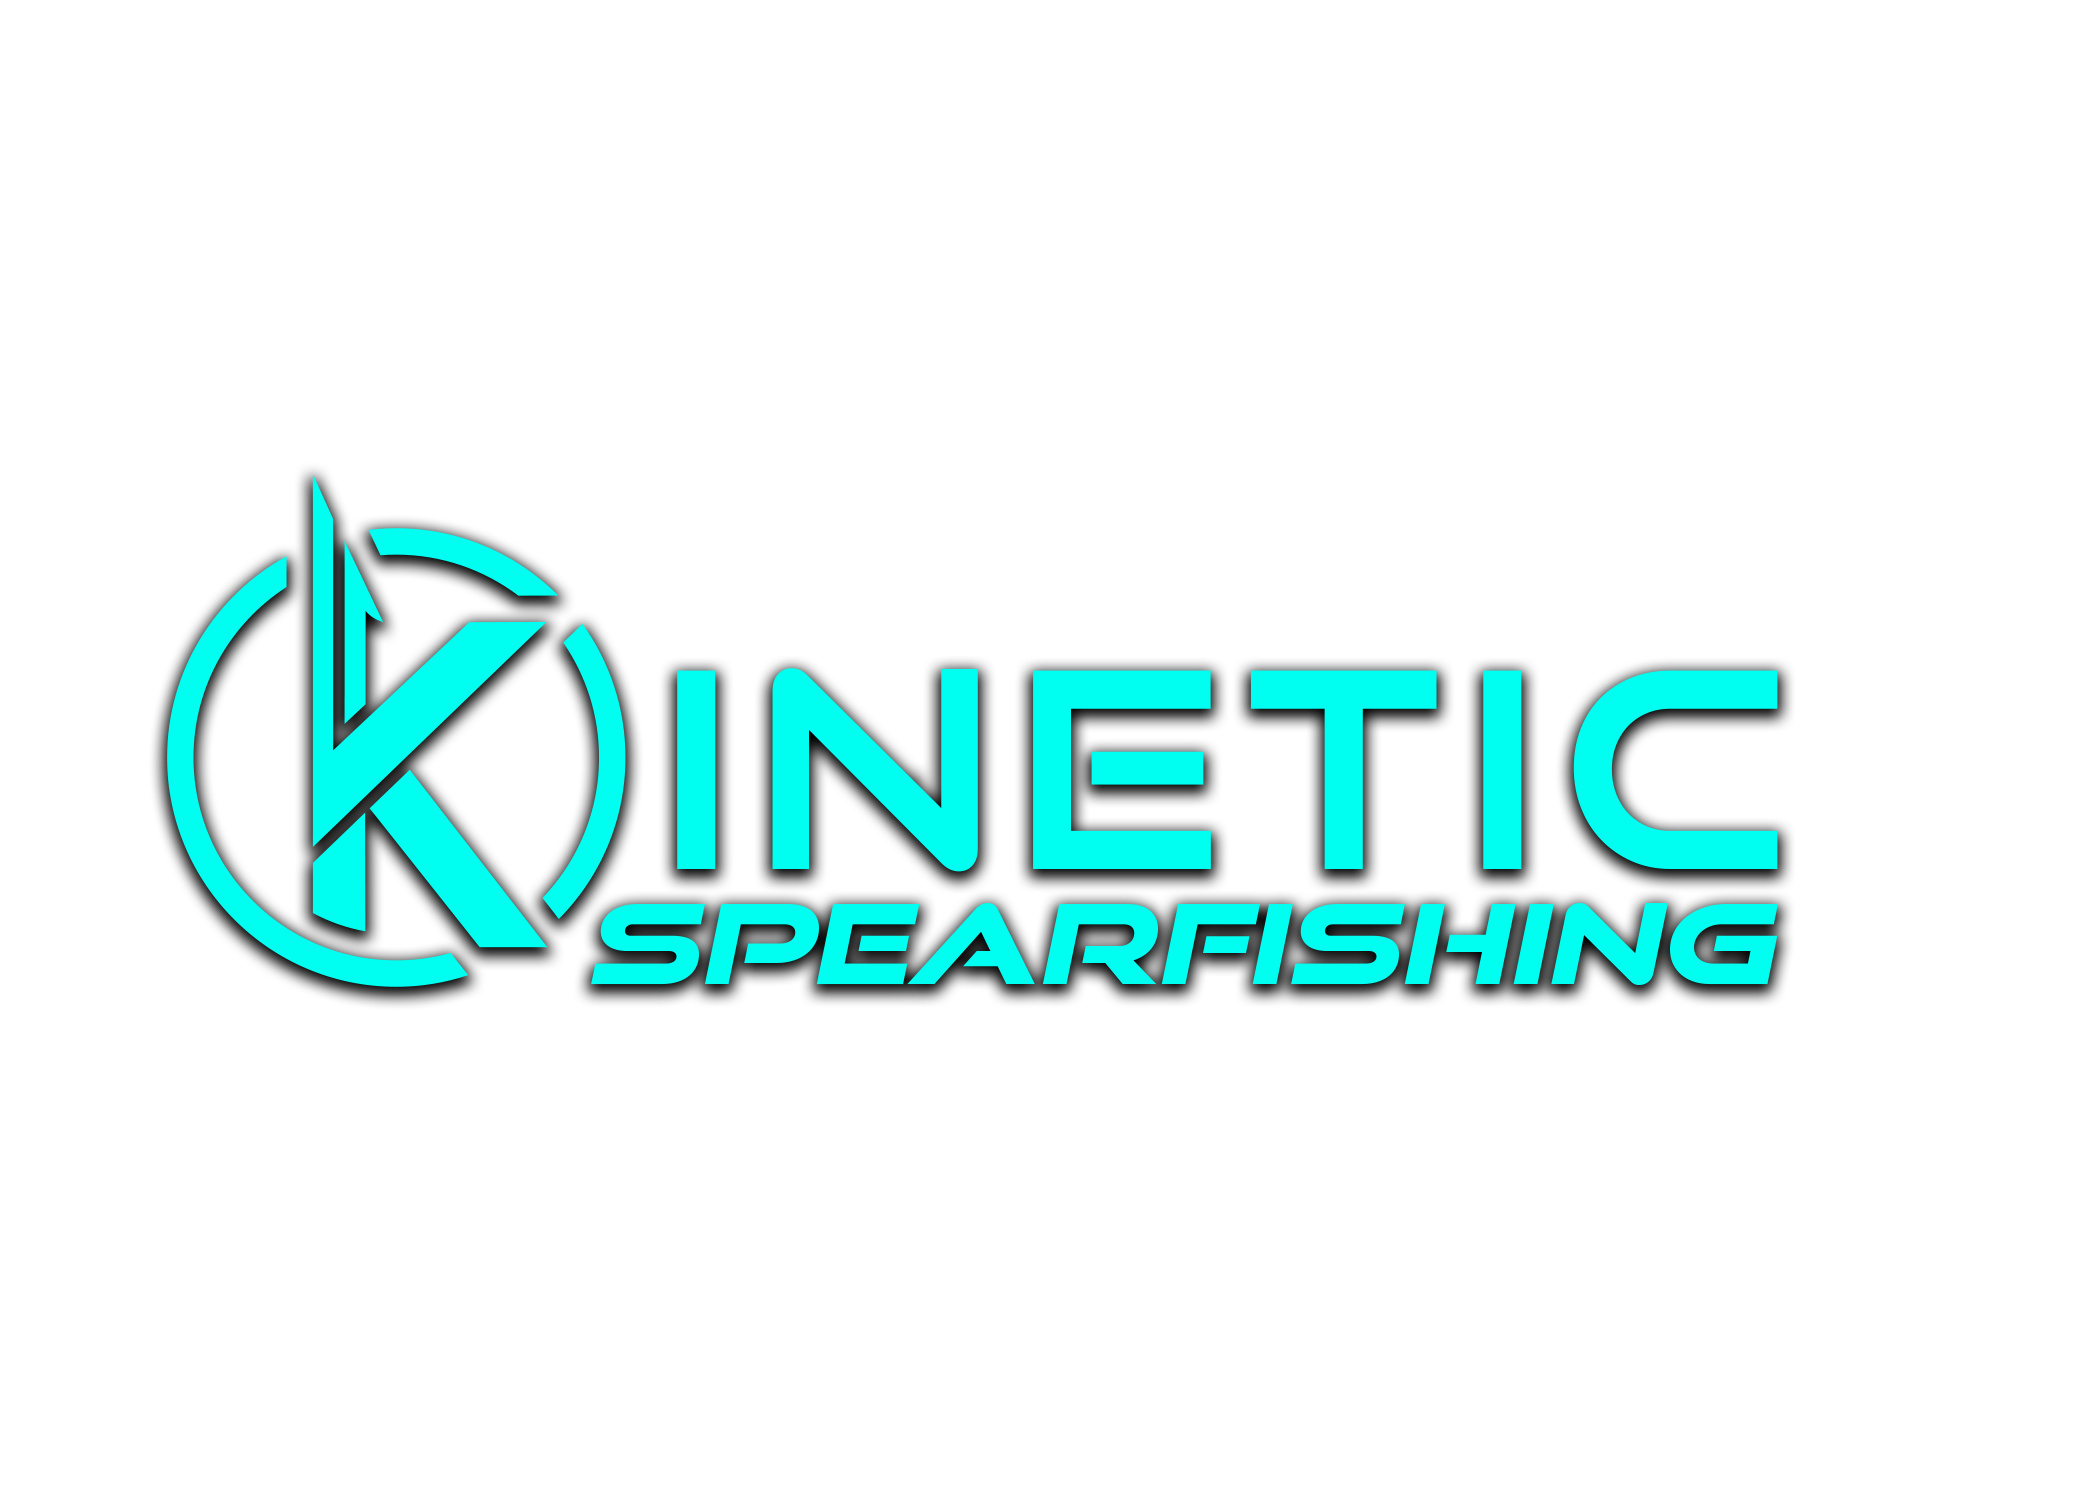 Kinetic Spearfishing